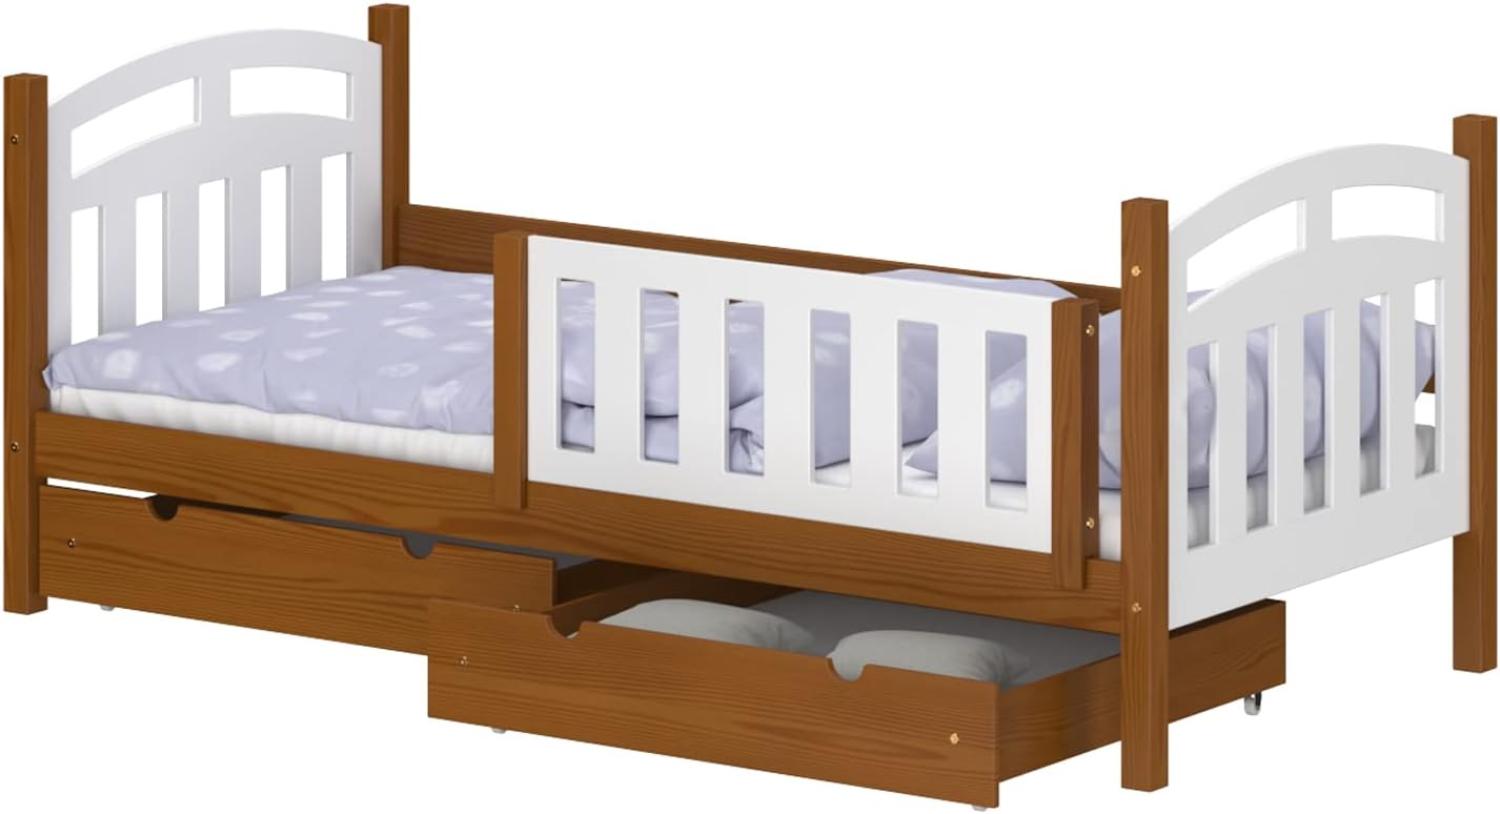 WNM Group Kinderbett mit Rausfallschutz Suzie - Jugenbett aus Massivholz - Bett mit 2 Schubladen für Mädchen und Jungen - Funktionsbett 180x90 cm - Braun Bild 1